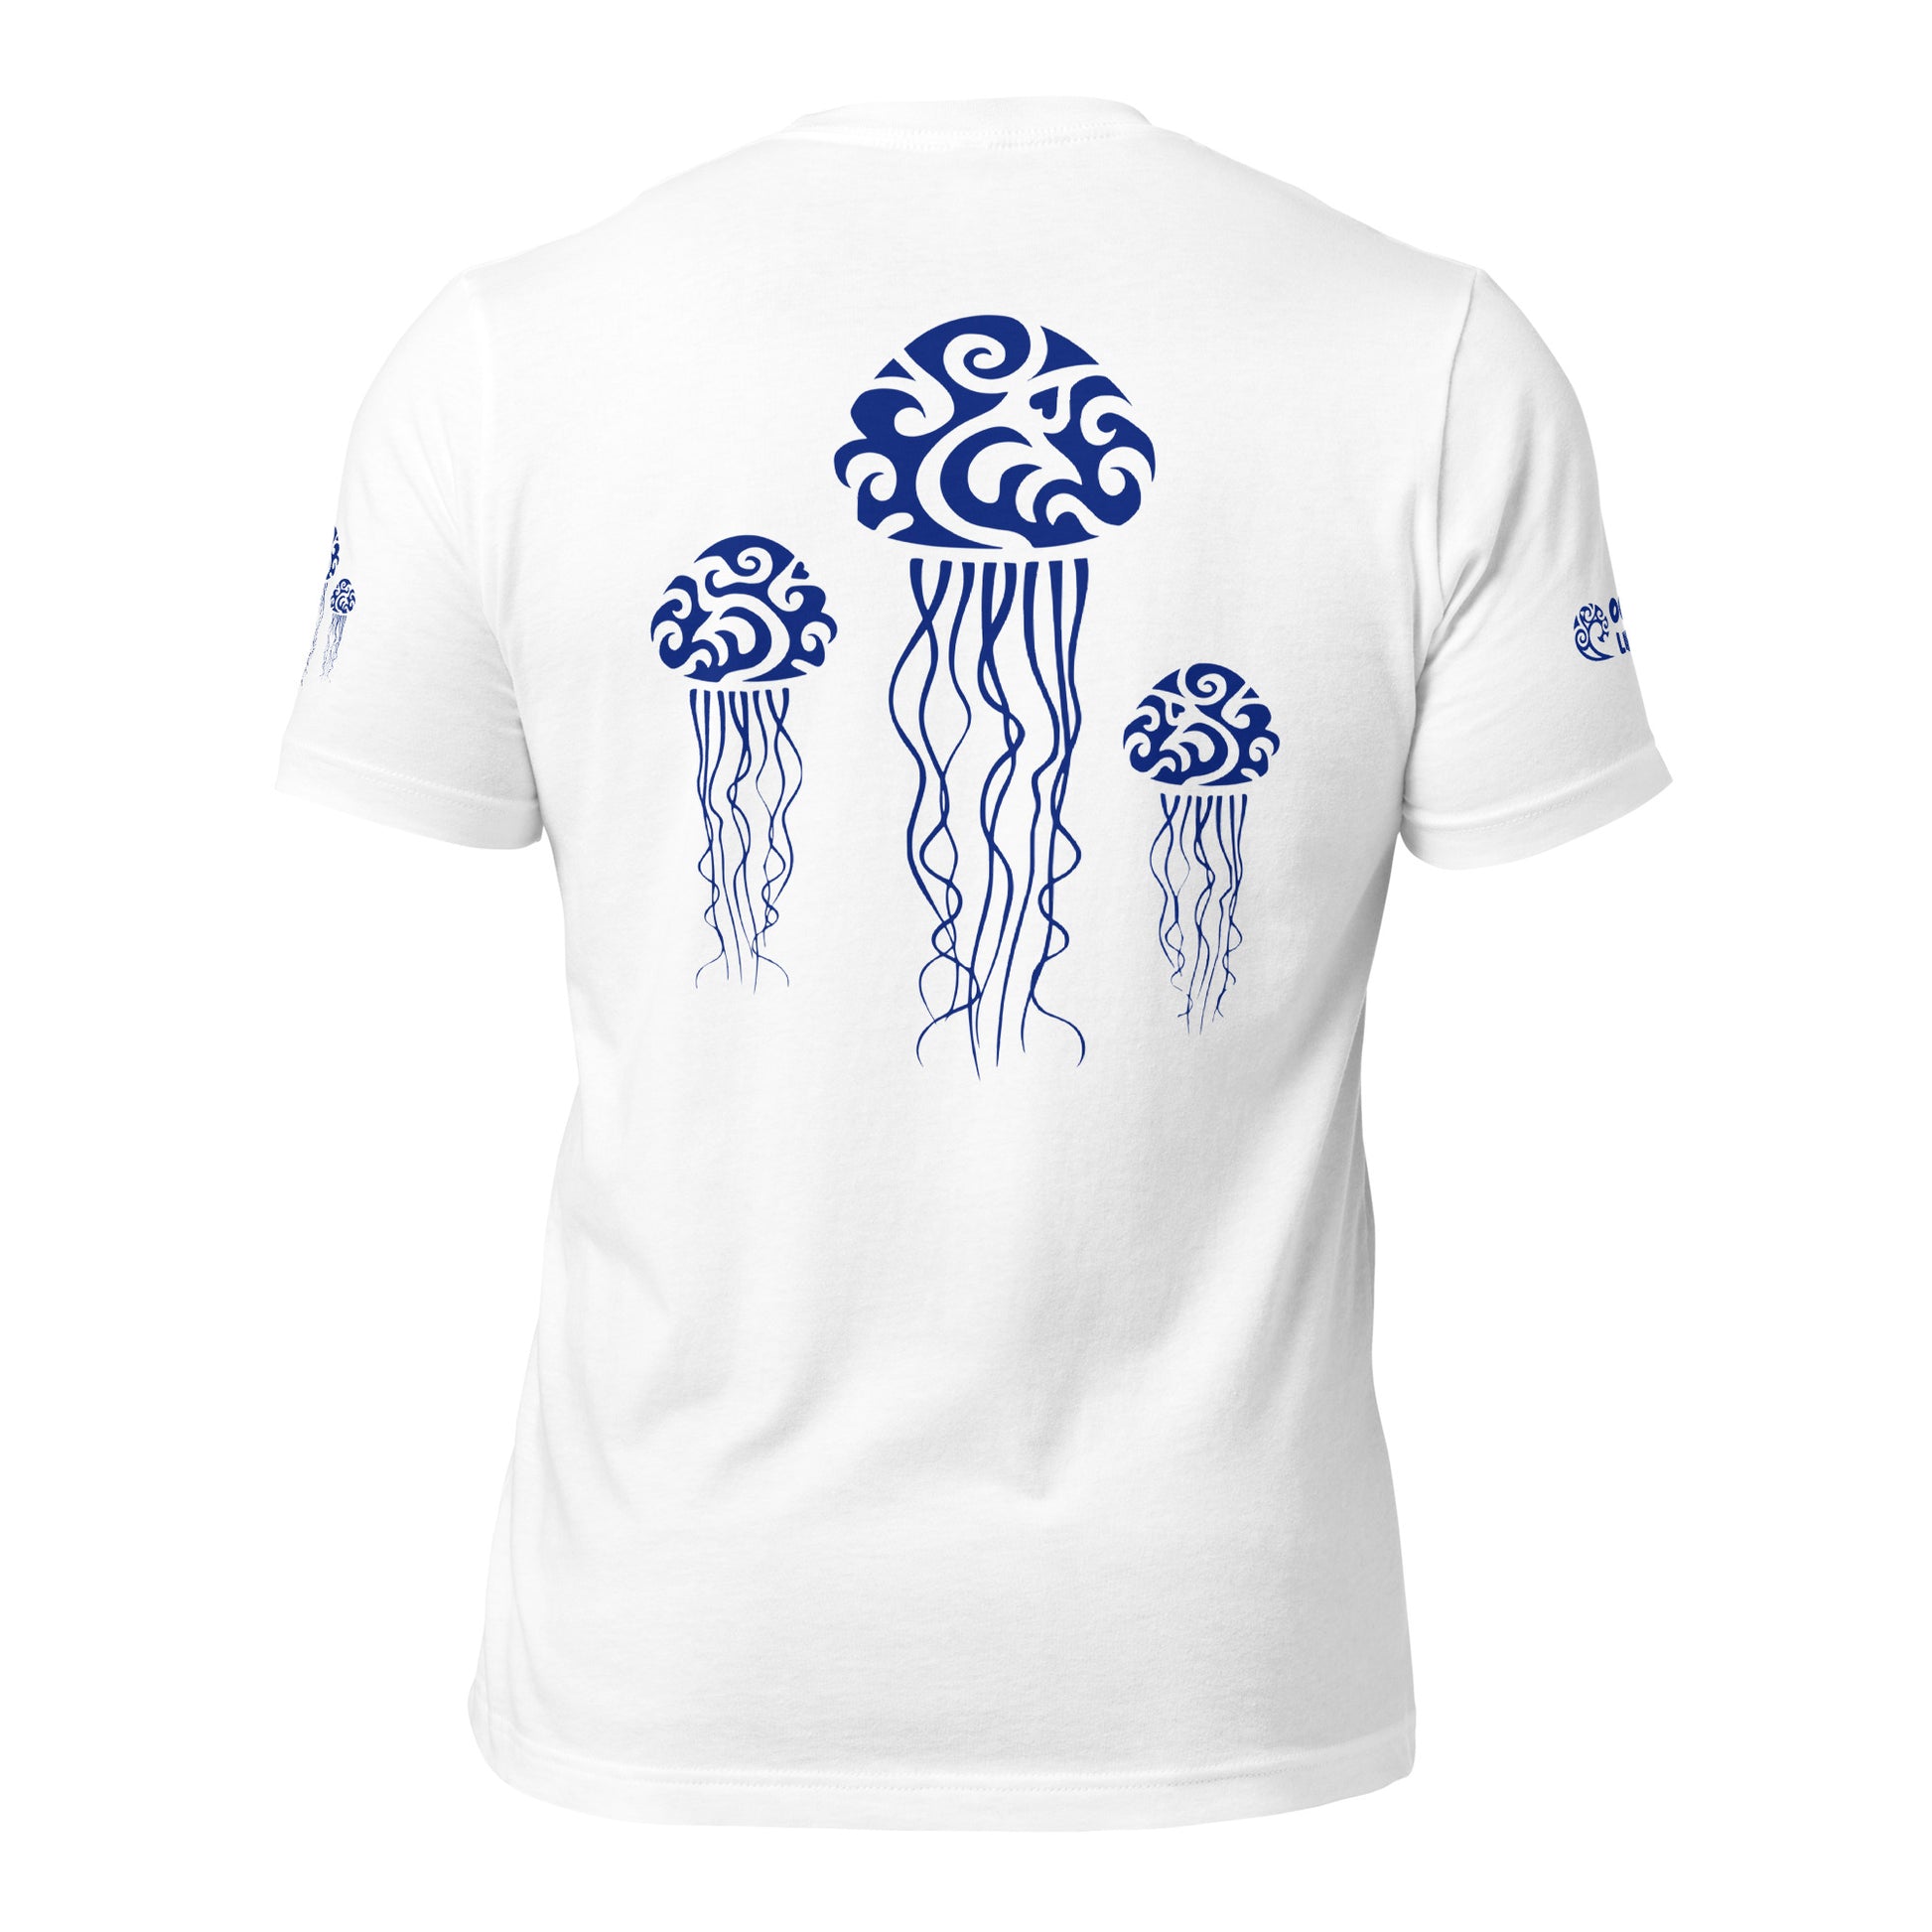 Polynesian T-shirt Jellyfish Tribal Samoan For Men and Women Back Navy on White